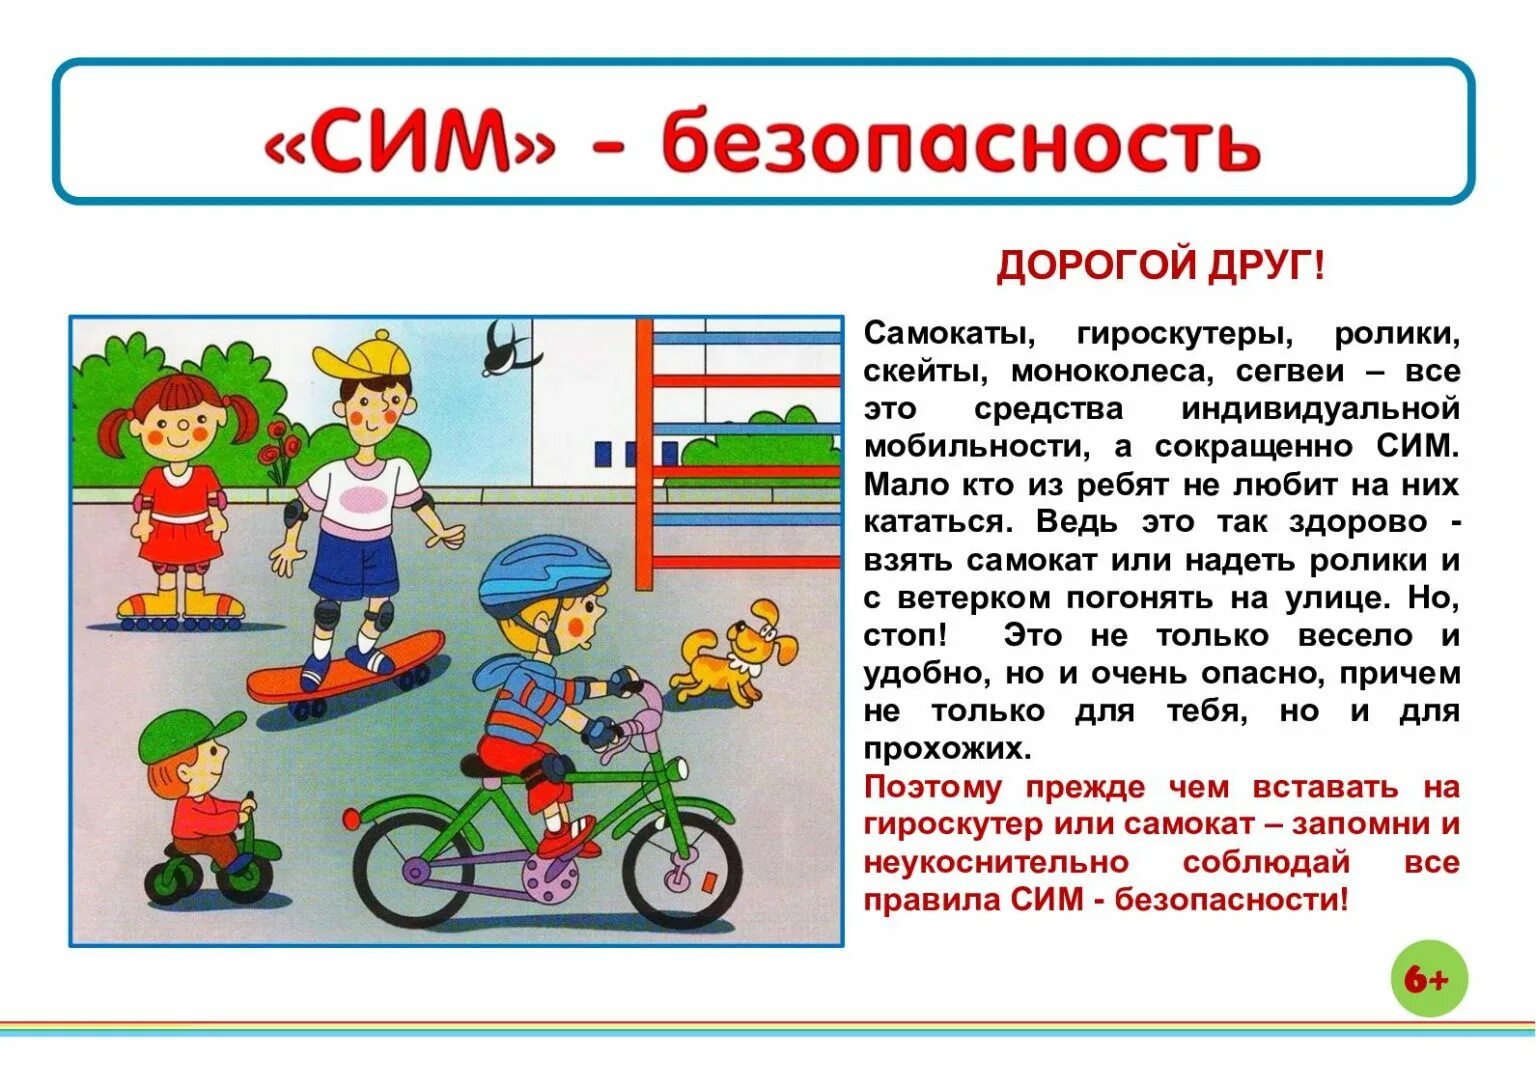 Безопасность на самокате для дошкольников. Правила катания на самокате для дошкольников. Безопасность на самокатах и велосипедах для дошкольников. Безопасное передвижение на самокатах.